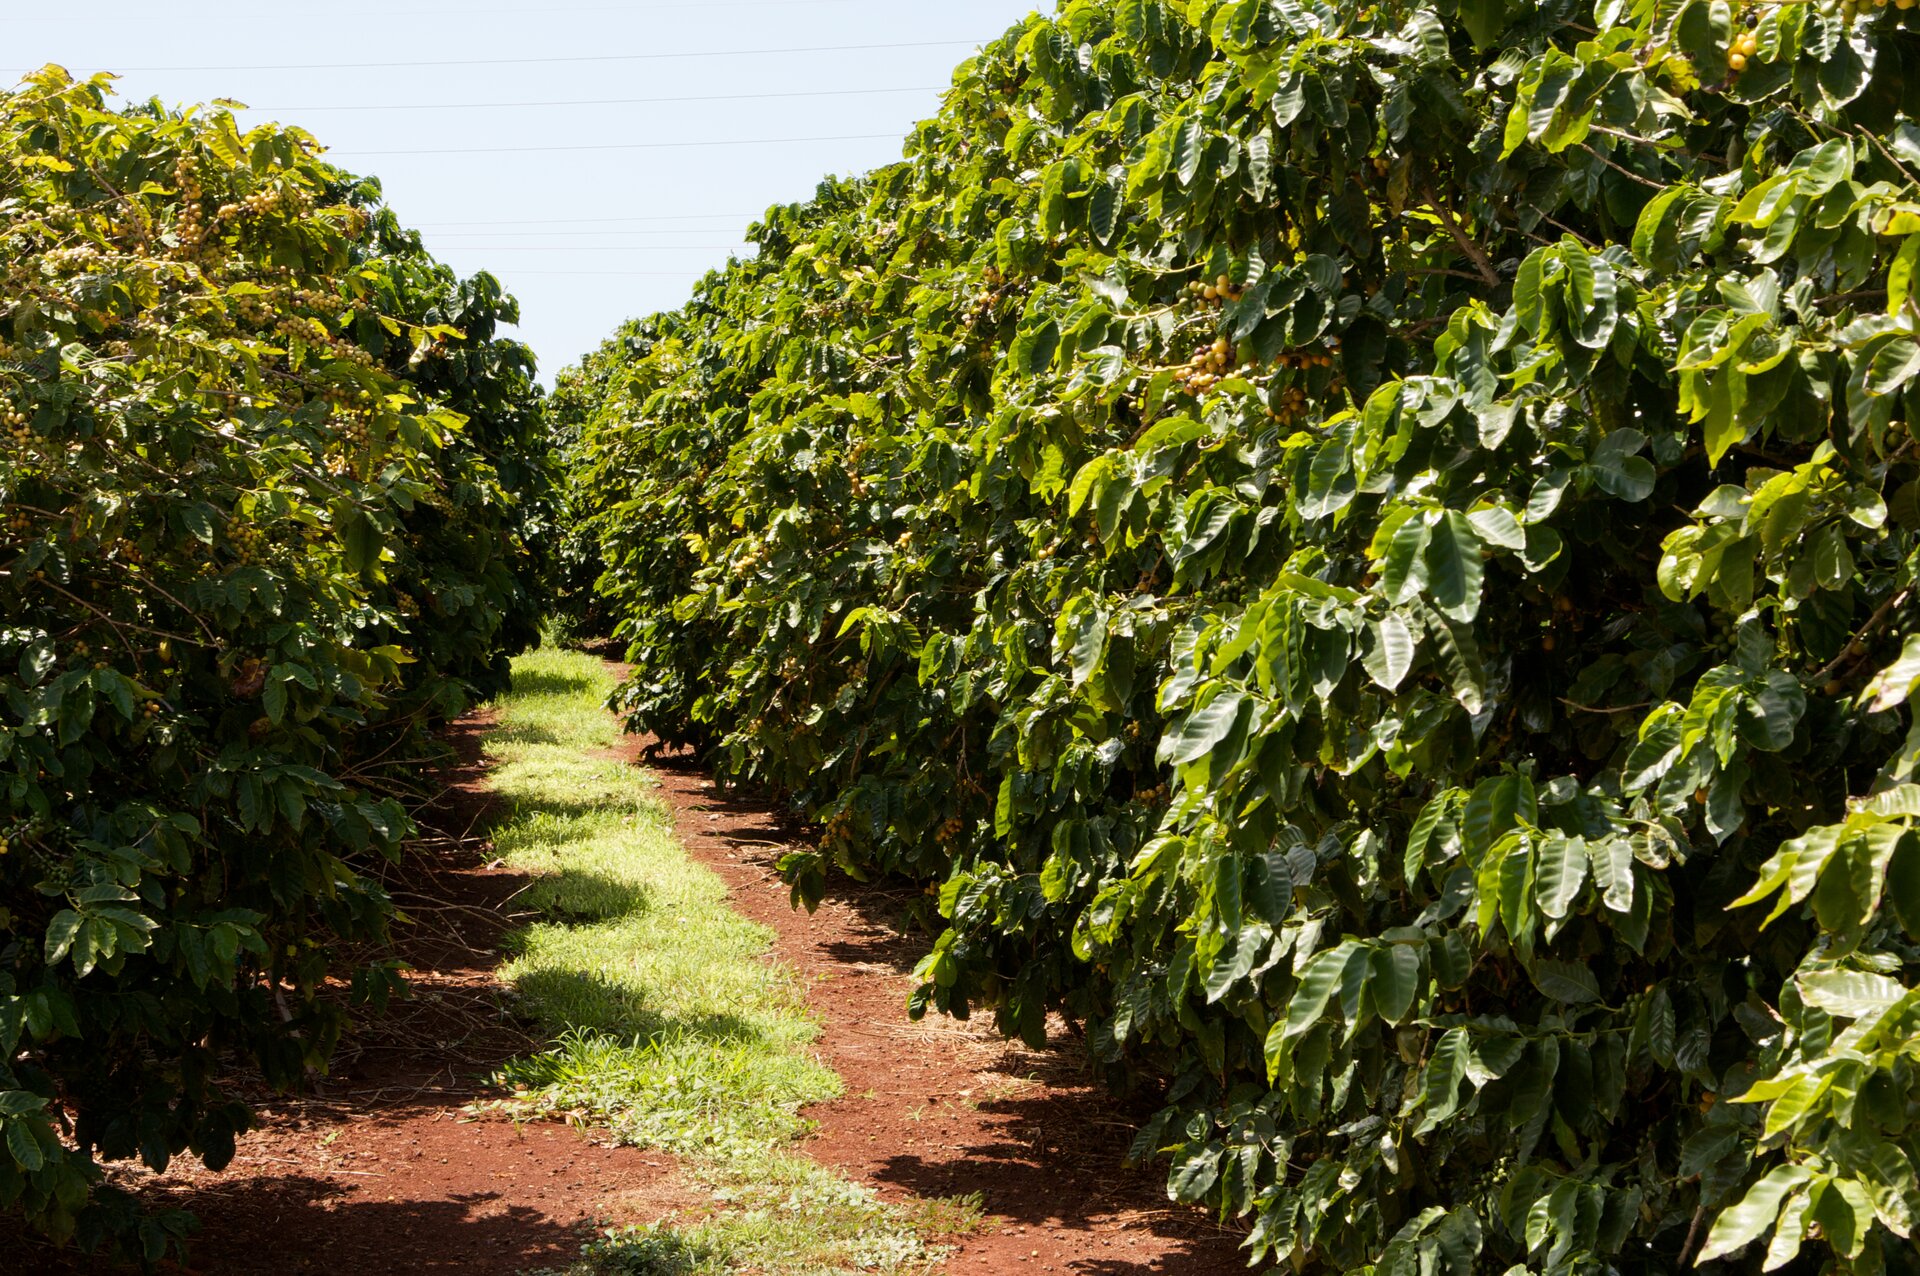 Zdjęcie przedstawia ścieżkę biegnącą pomiędzy krzewami kawy. Krzewy mają gęste liście o pofałdowanych brzegach. Krzewy kawy rosną w słońcu.    